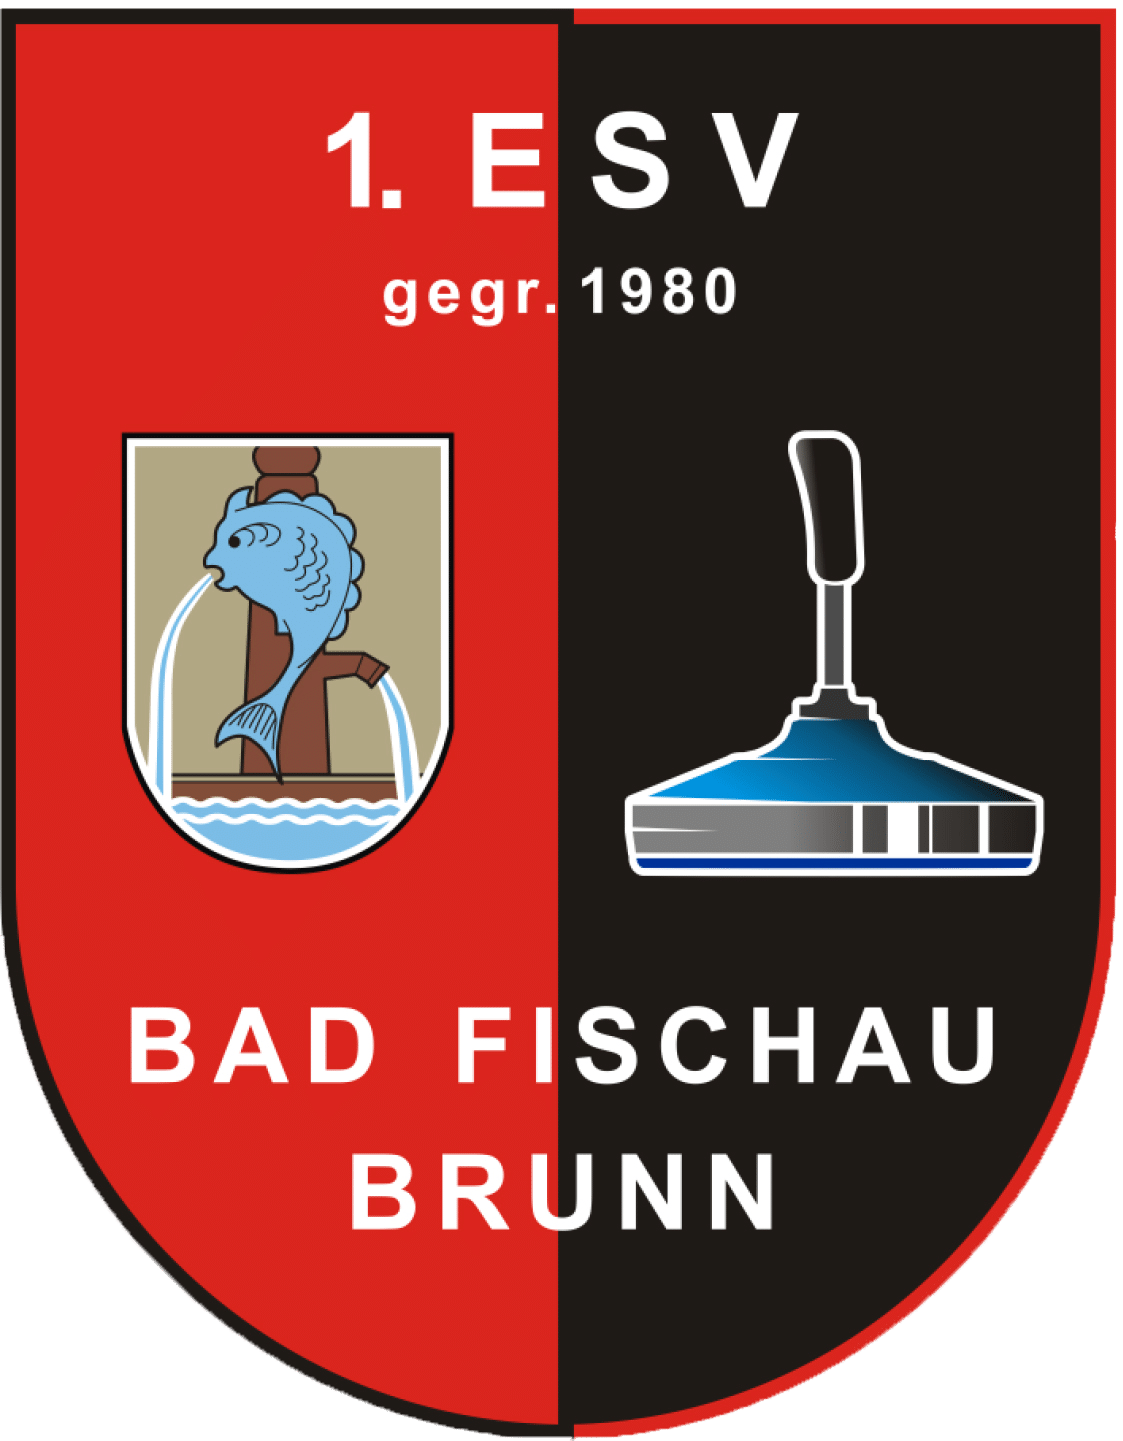 1.ESV Bad Fischau Brunn